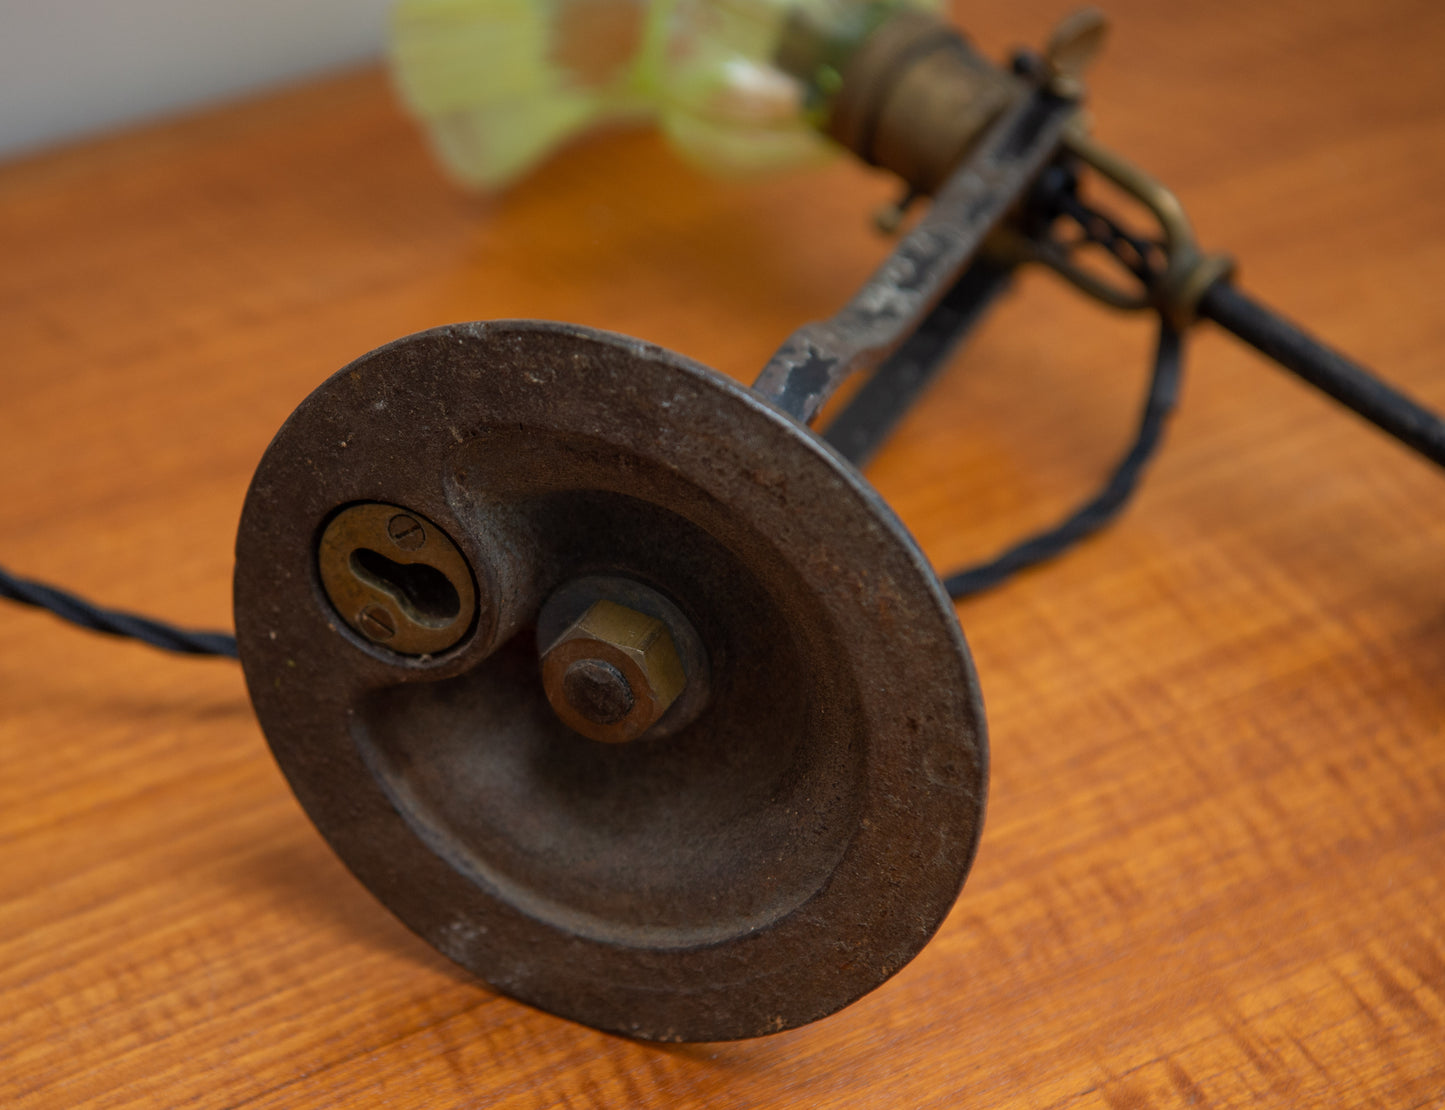 Iron and Brass Marine Gimbal Lamp. Original Ship Counterbalance Lamp